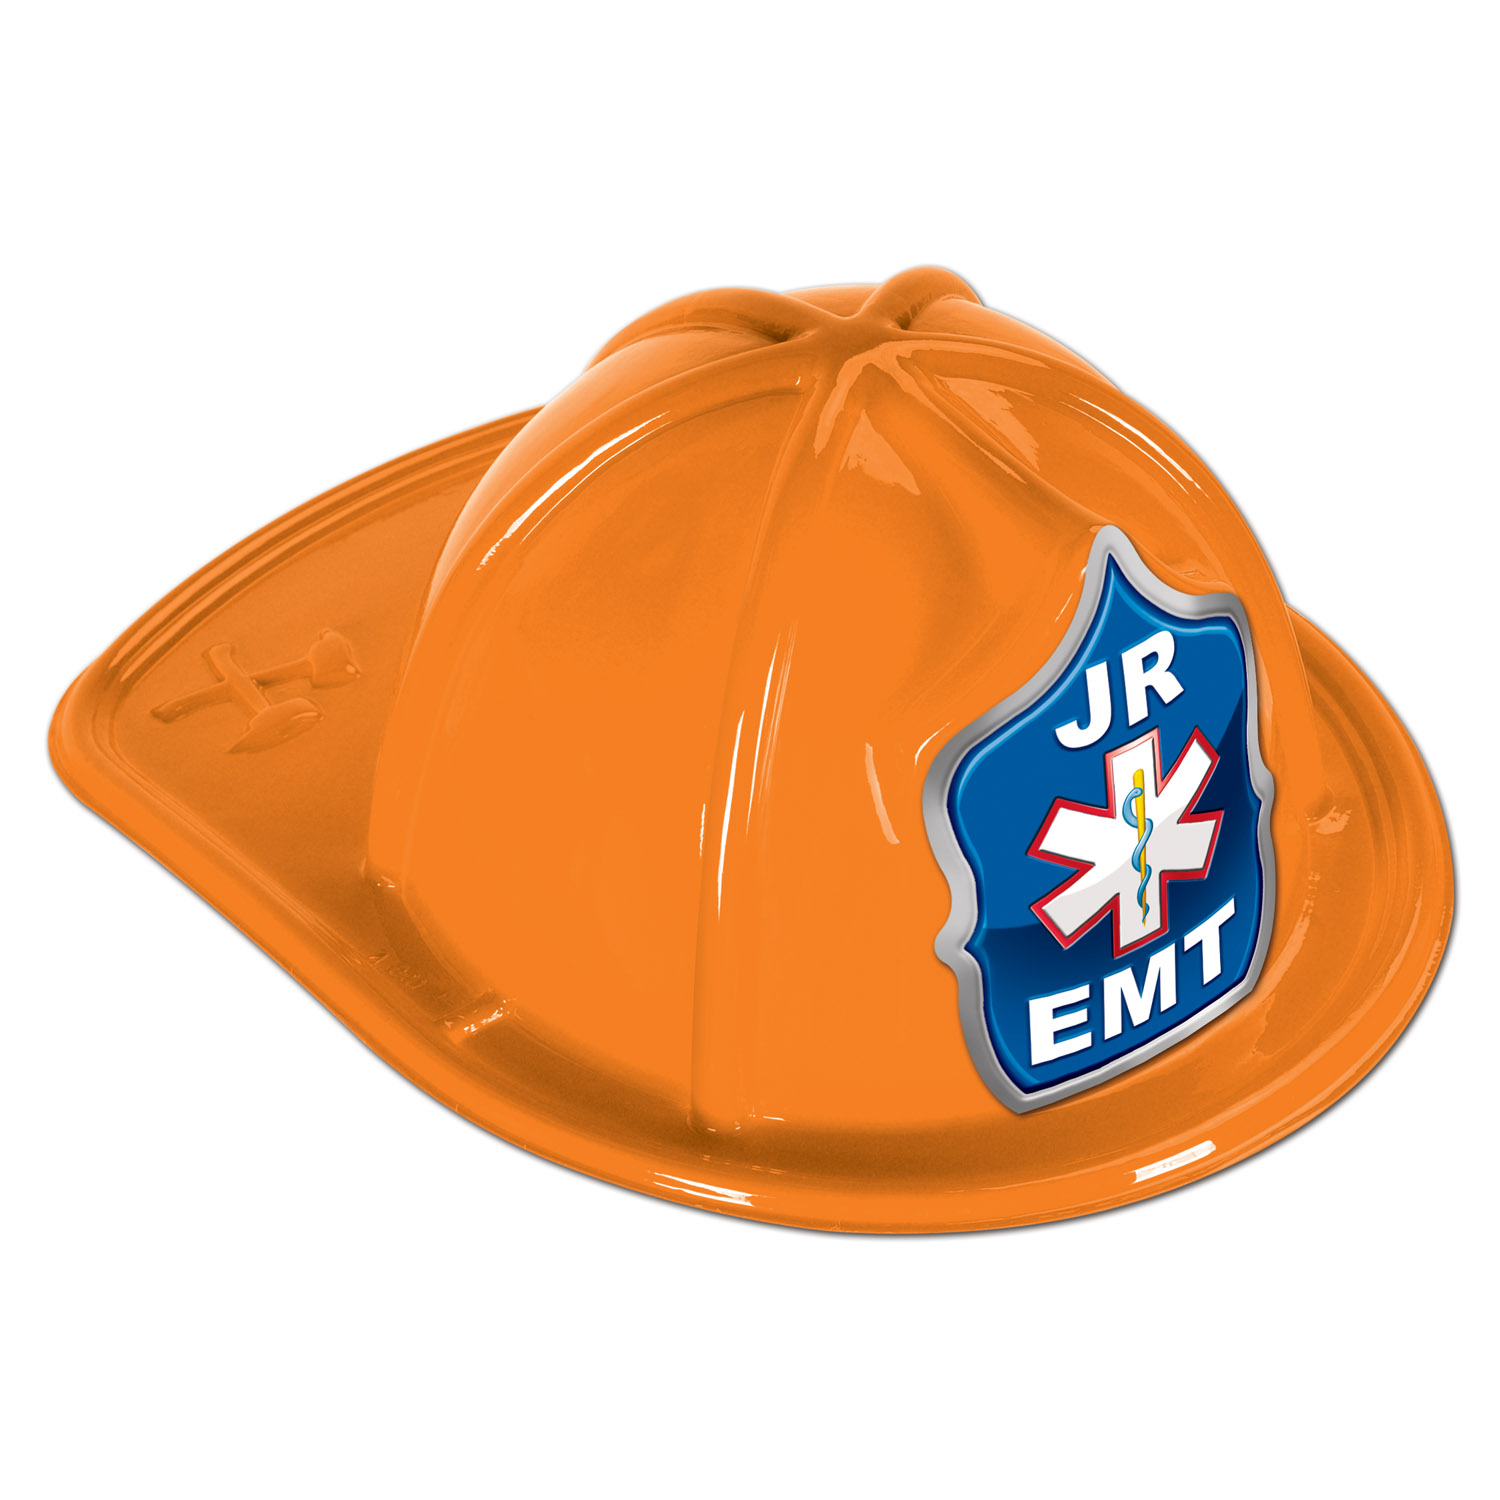 Jr EMT HAT